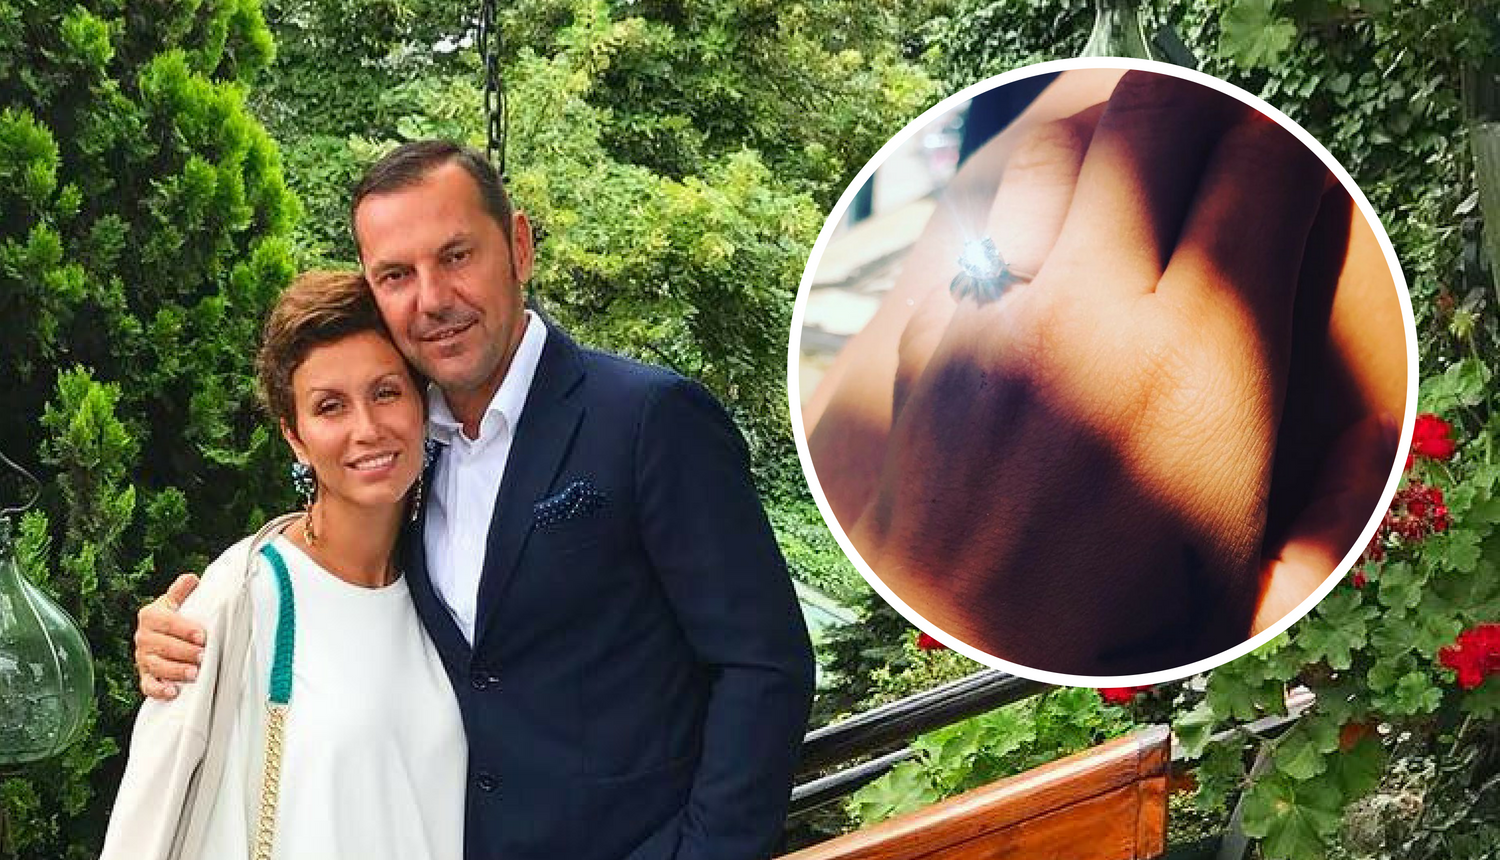 Ana Gruica pokazala zaručnički prsten: 'Pa kako ne bi rekla da'